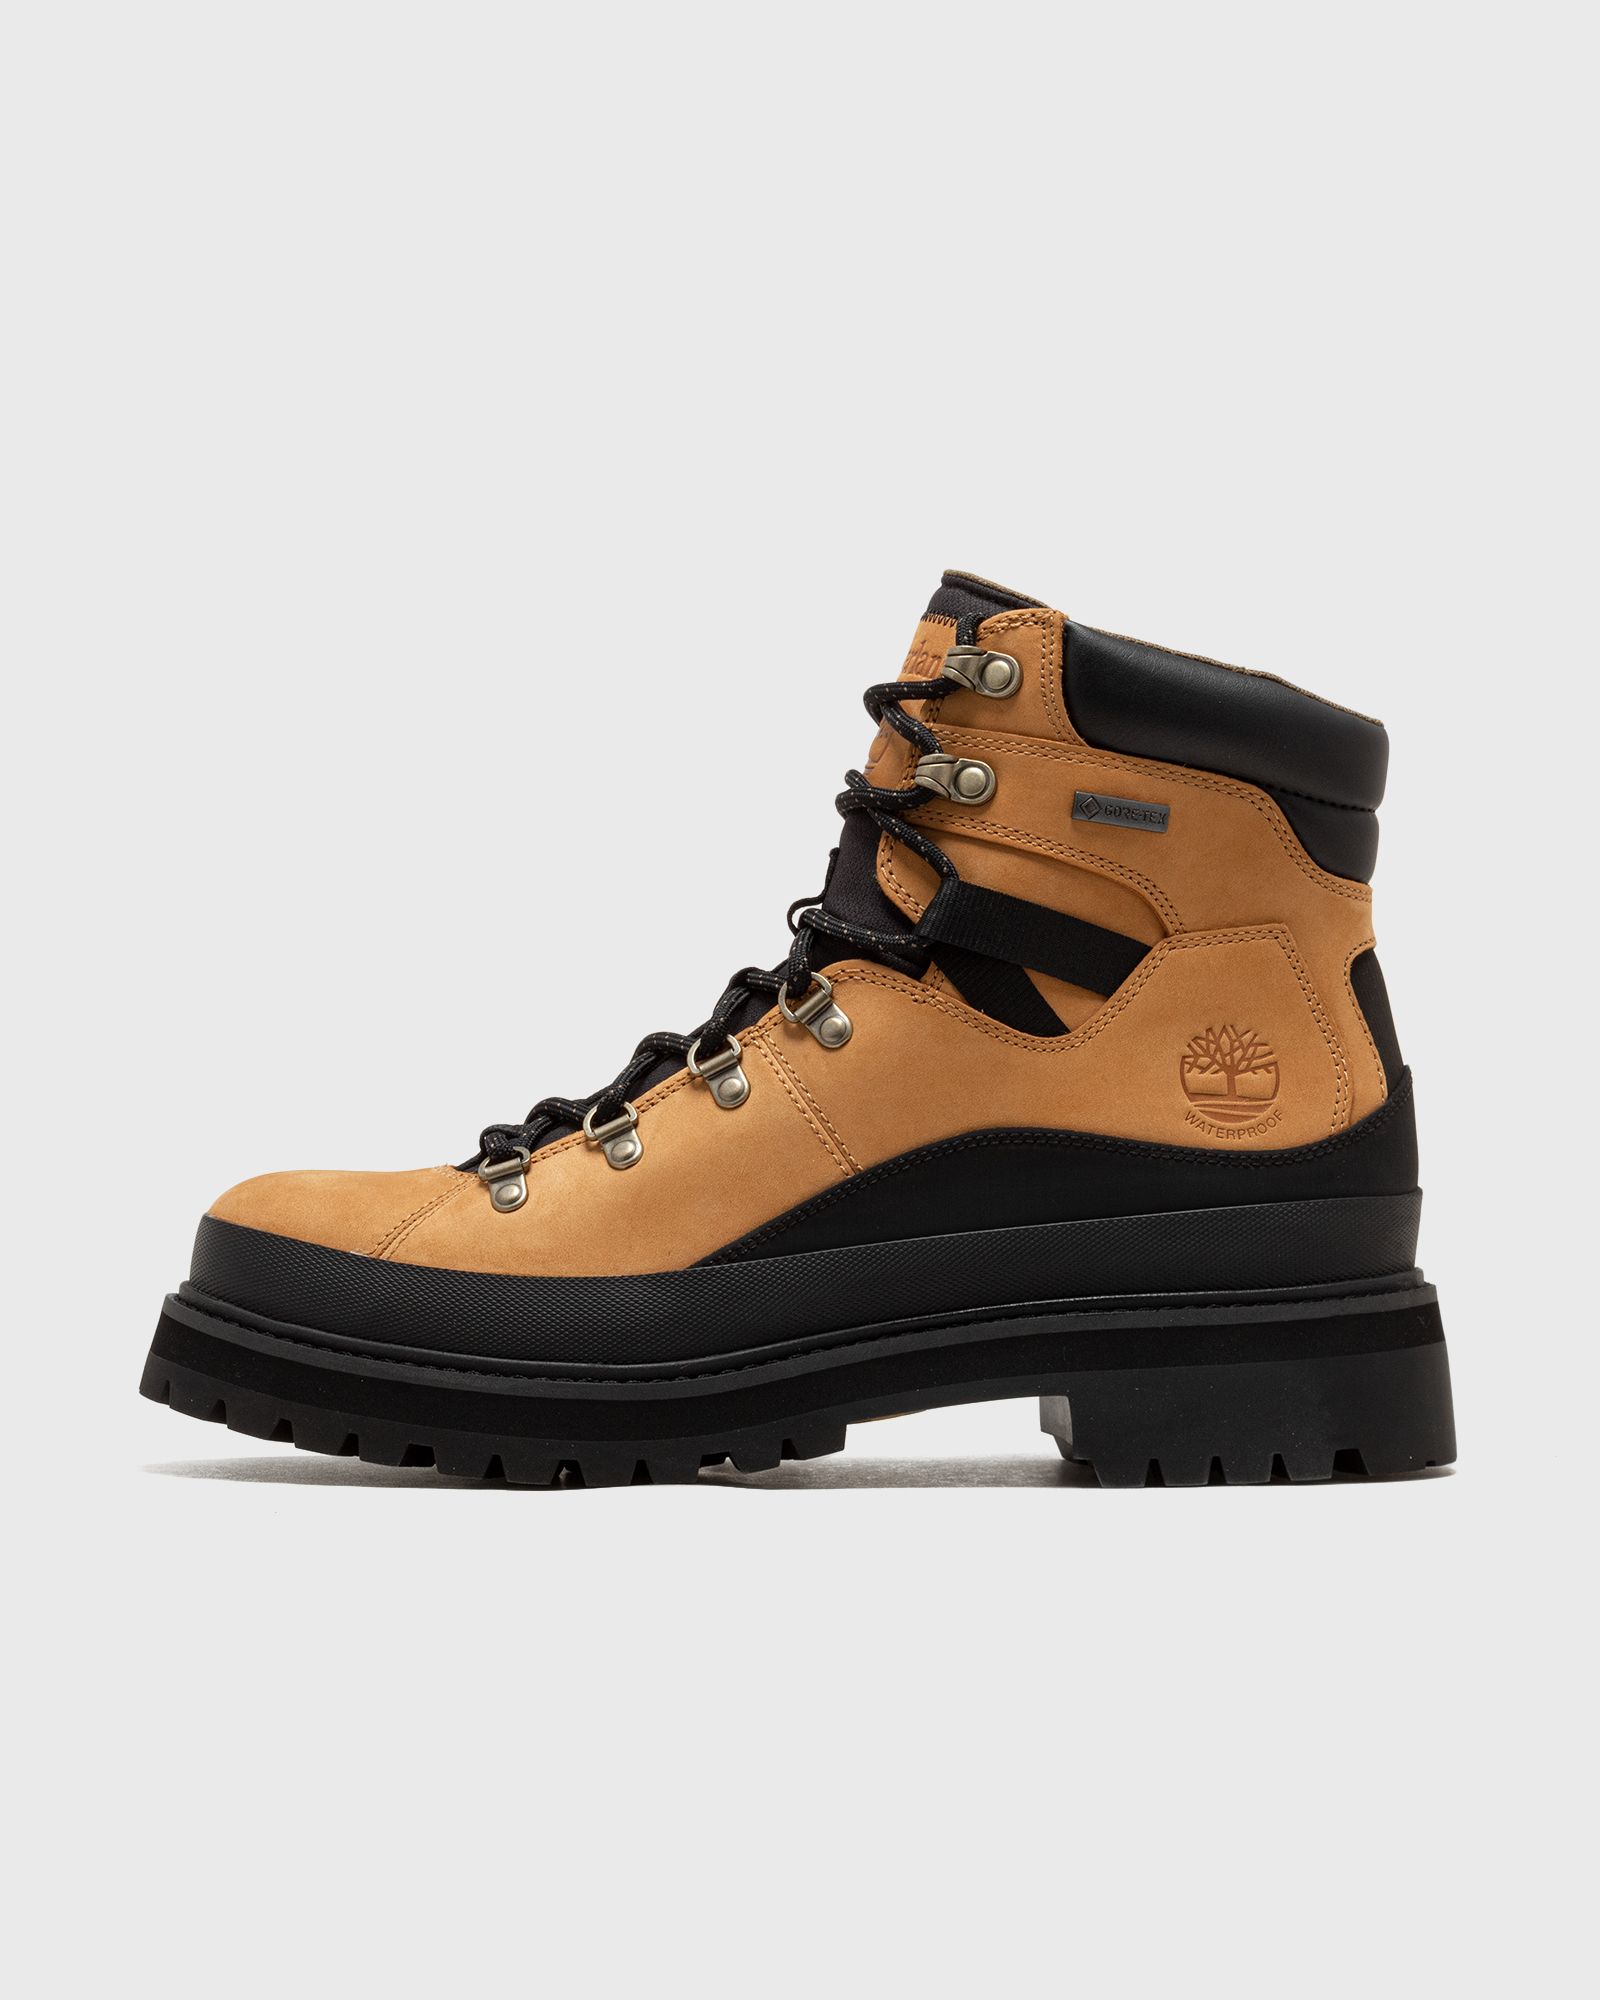 Timberland - vibram gtx men boots black|brown in größe:44,5